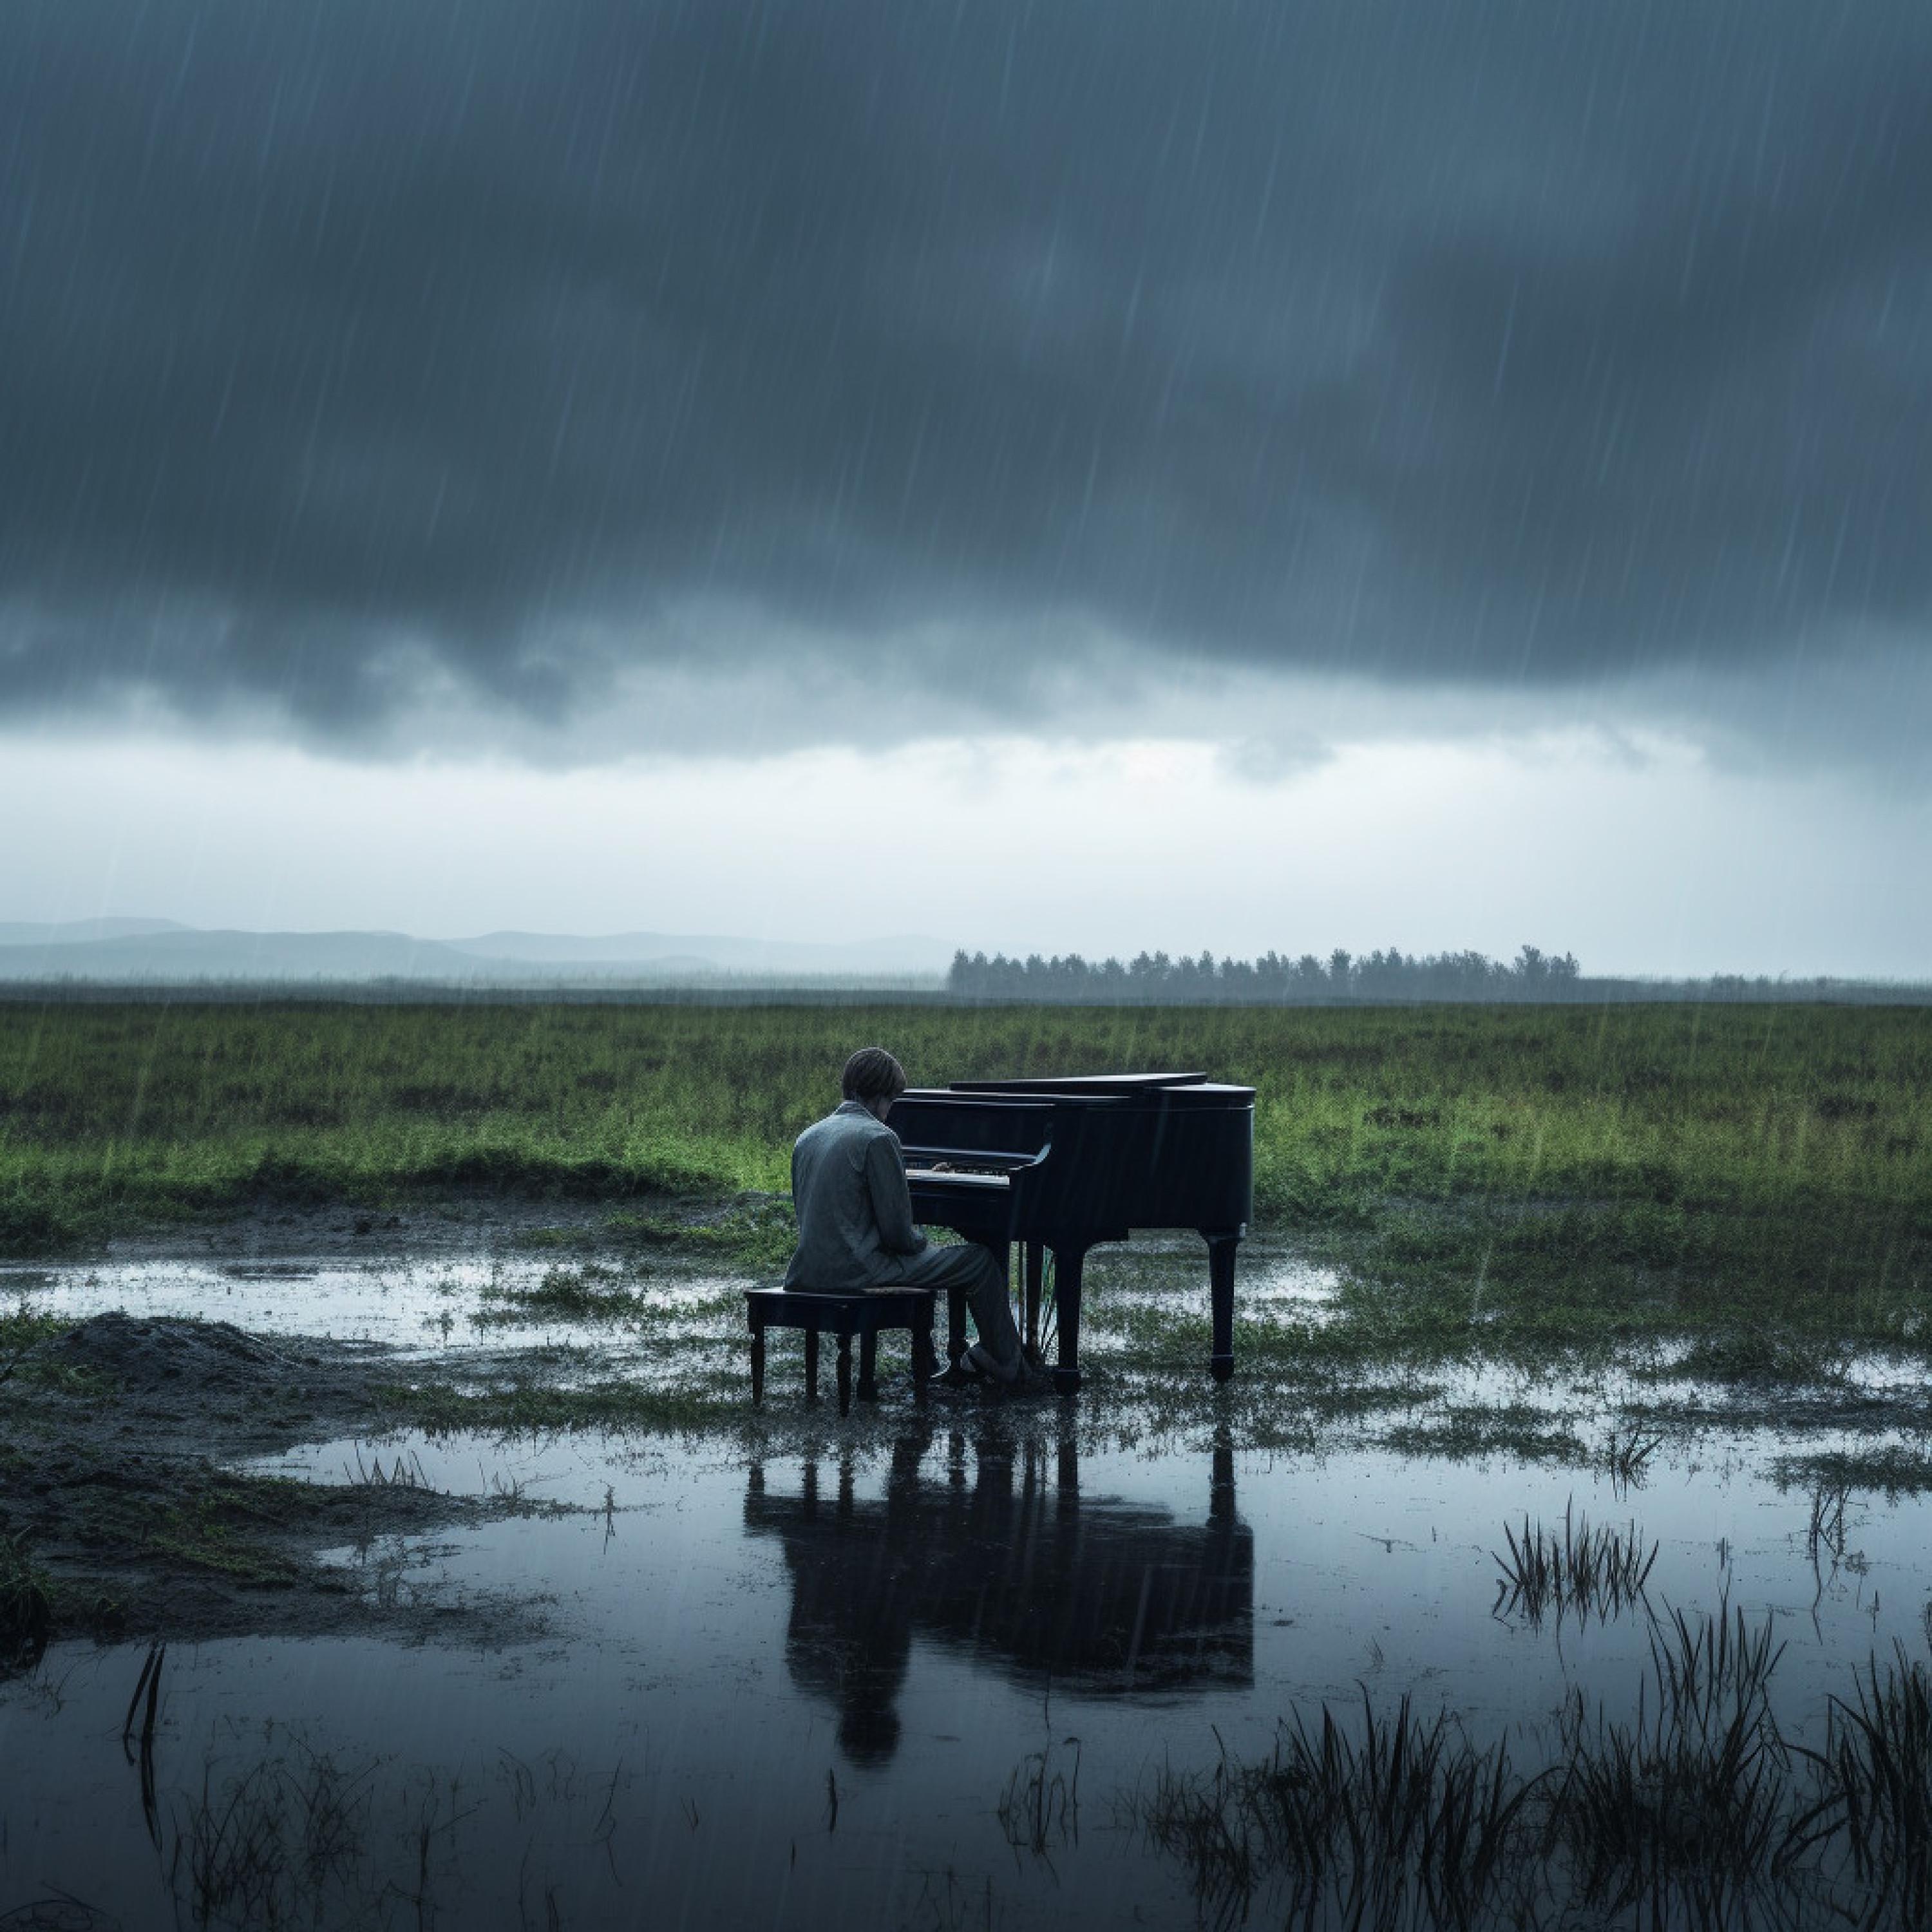 RAIN MOOD - Acoustic Rain and Piano Study